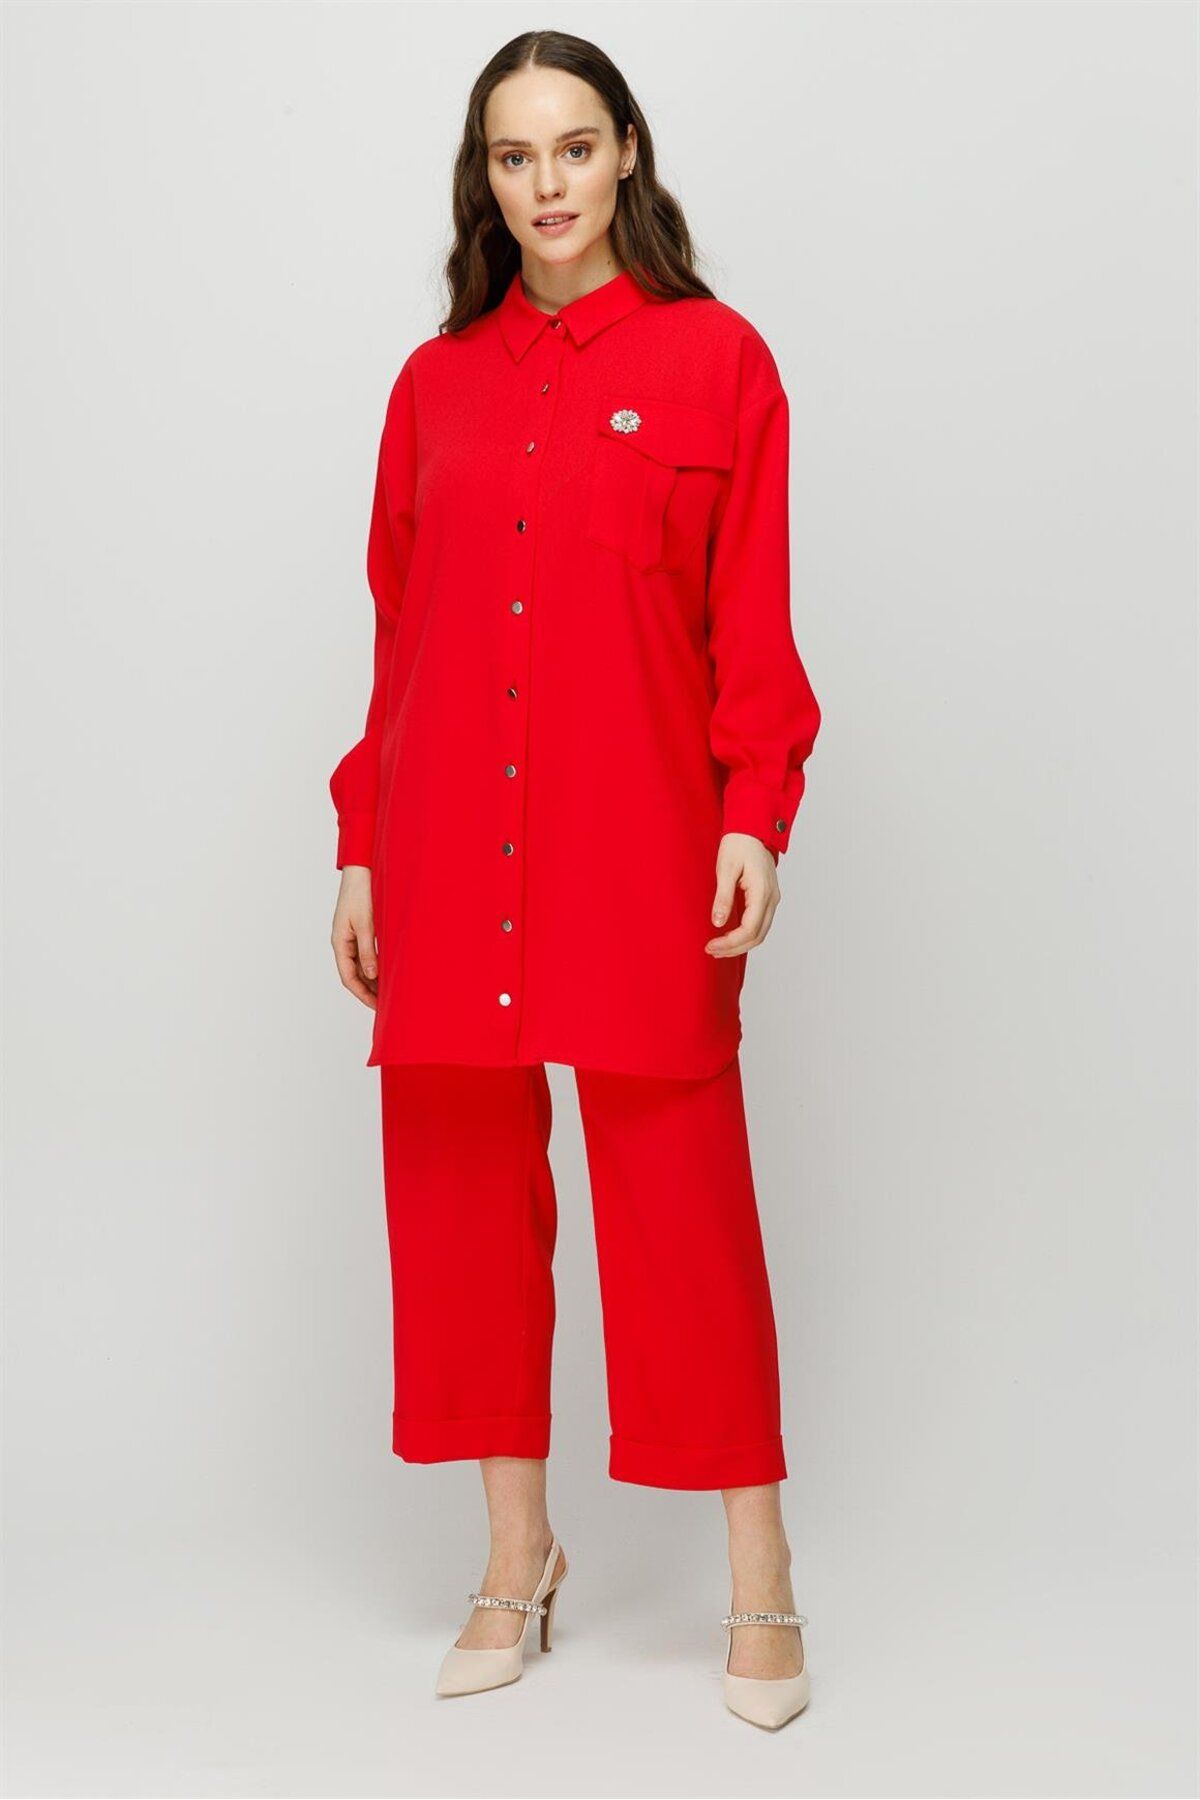 Esswaap Broş Detaylı Pantolon Tunik Takım Kırmızı